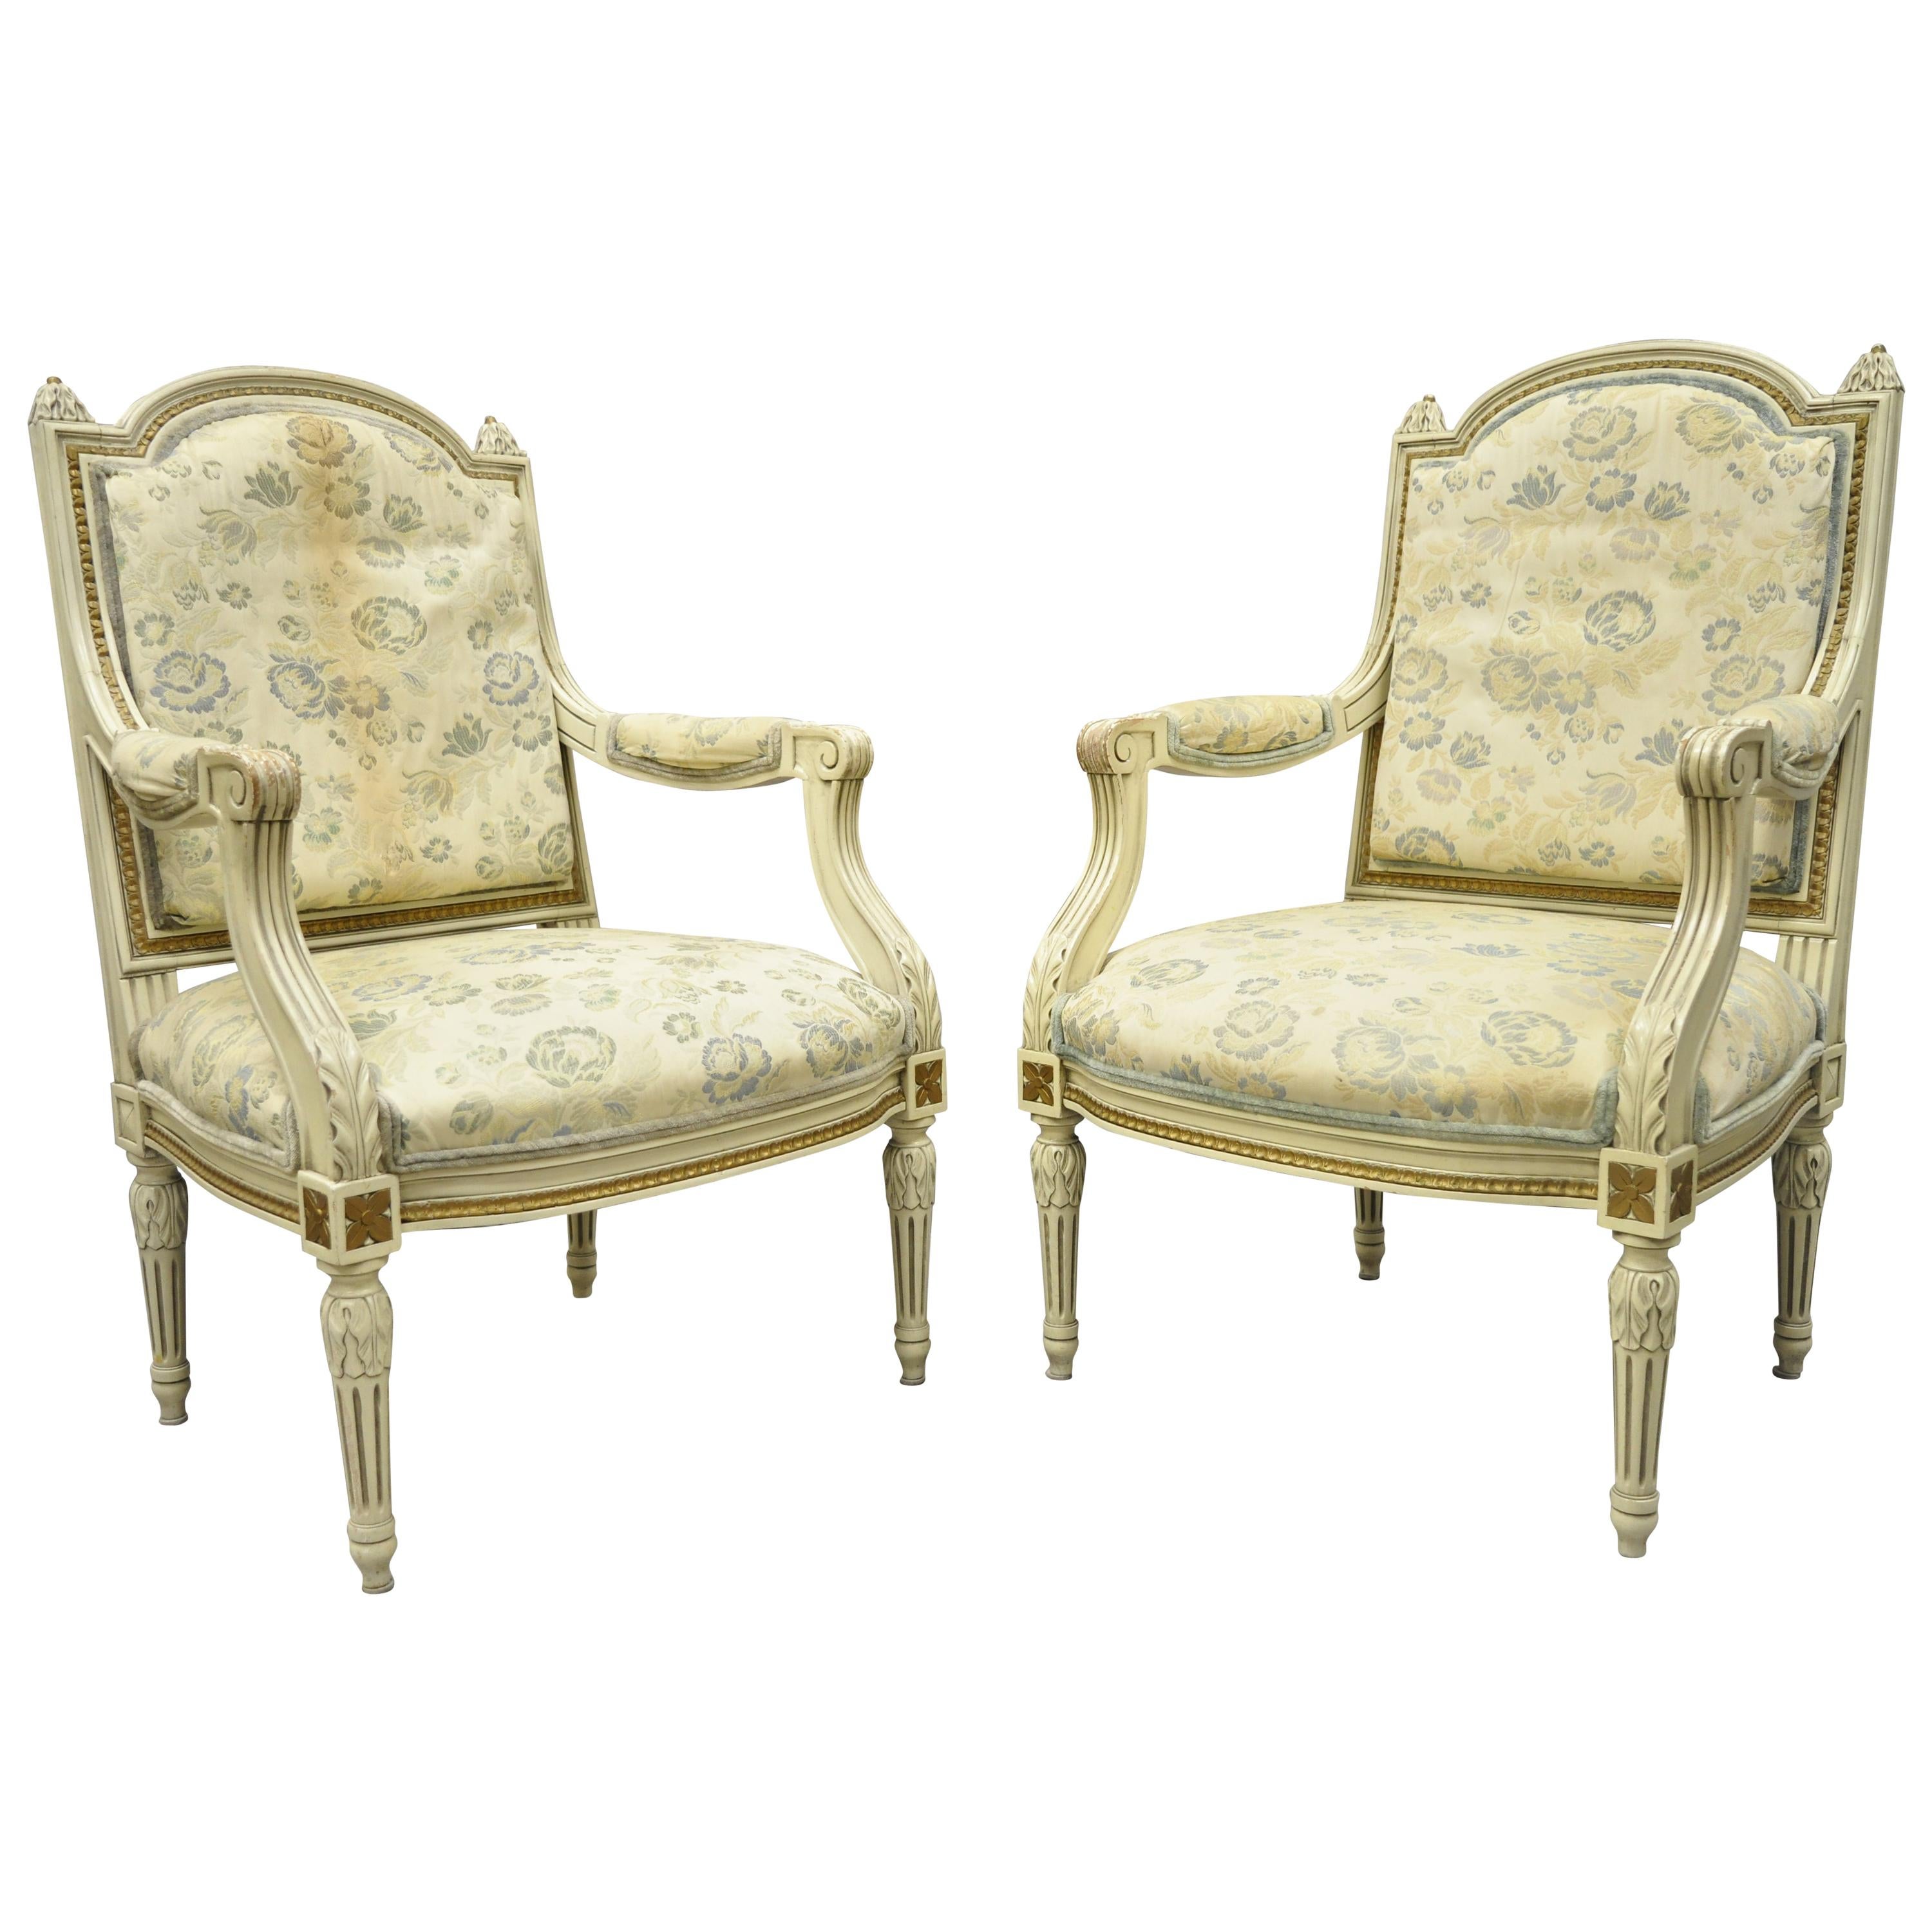 Paire de fauteuils de style provincial français Louis XVI peints en crème